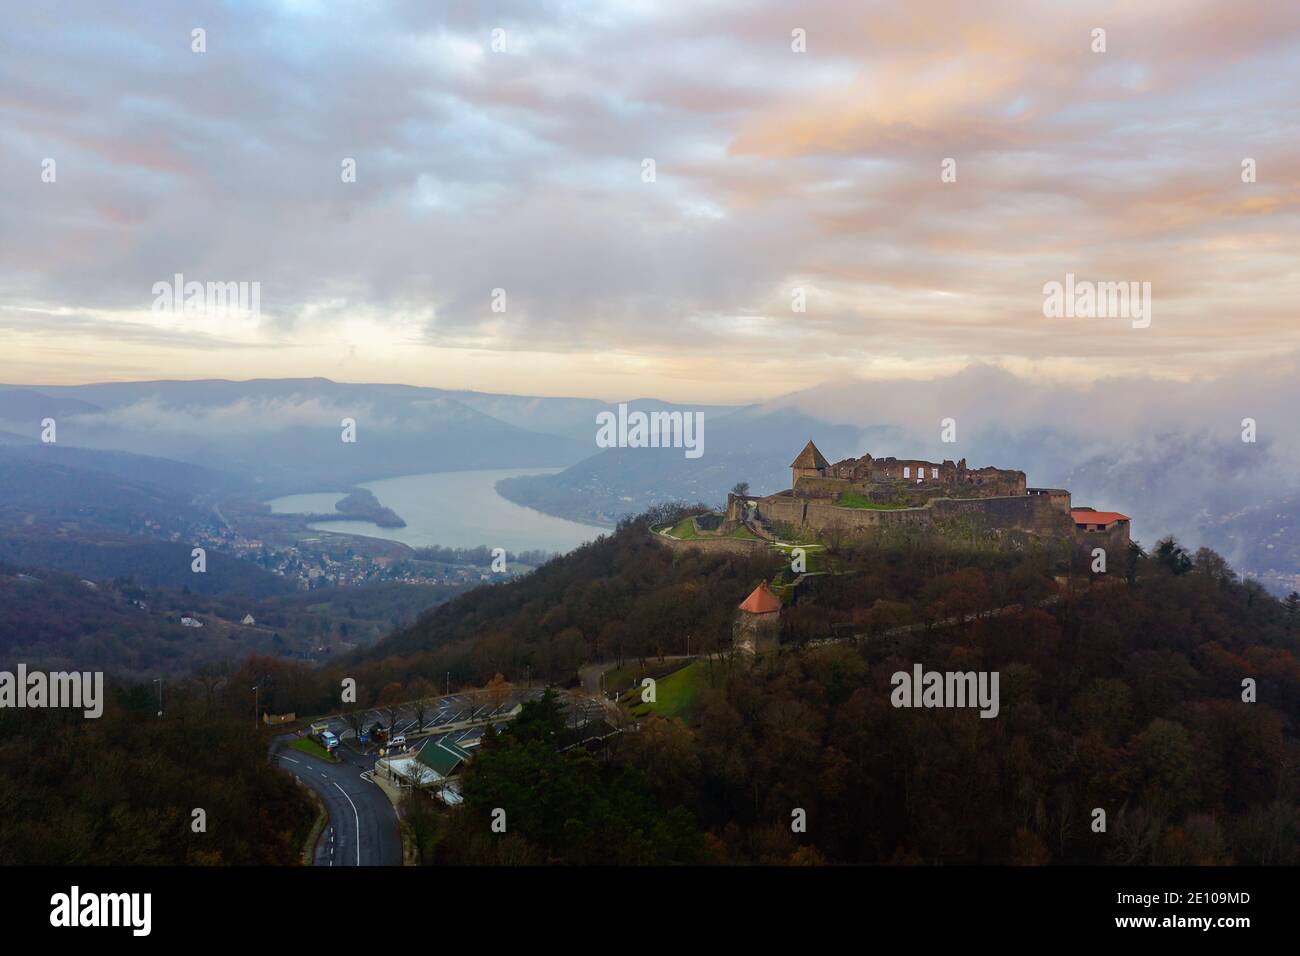 Visegrad Zitadelle Burgruine in Donau biegen Ungarn. Fantastische Luftlandschaft bei schlechtem Wetter. Nebliger, wolkiger Sonnenaufgang Stockfoto